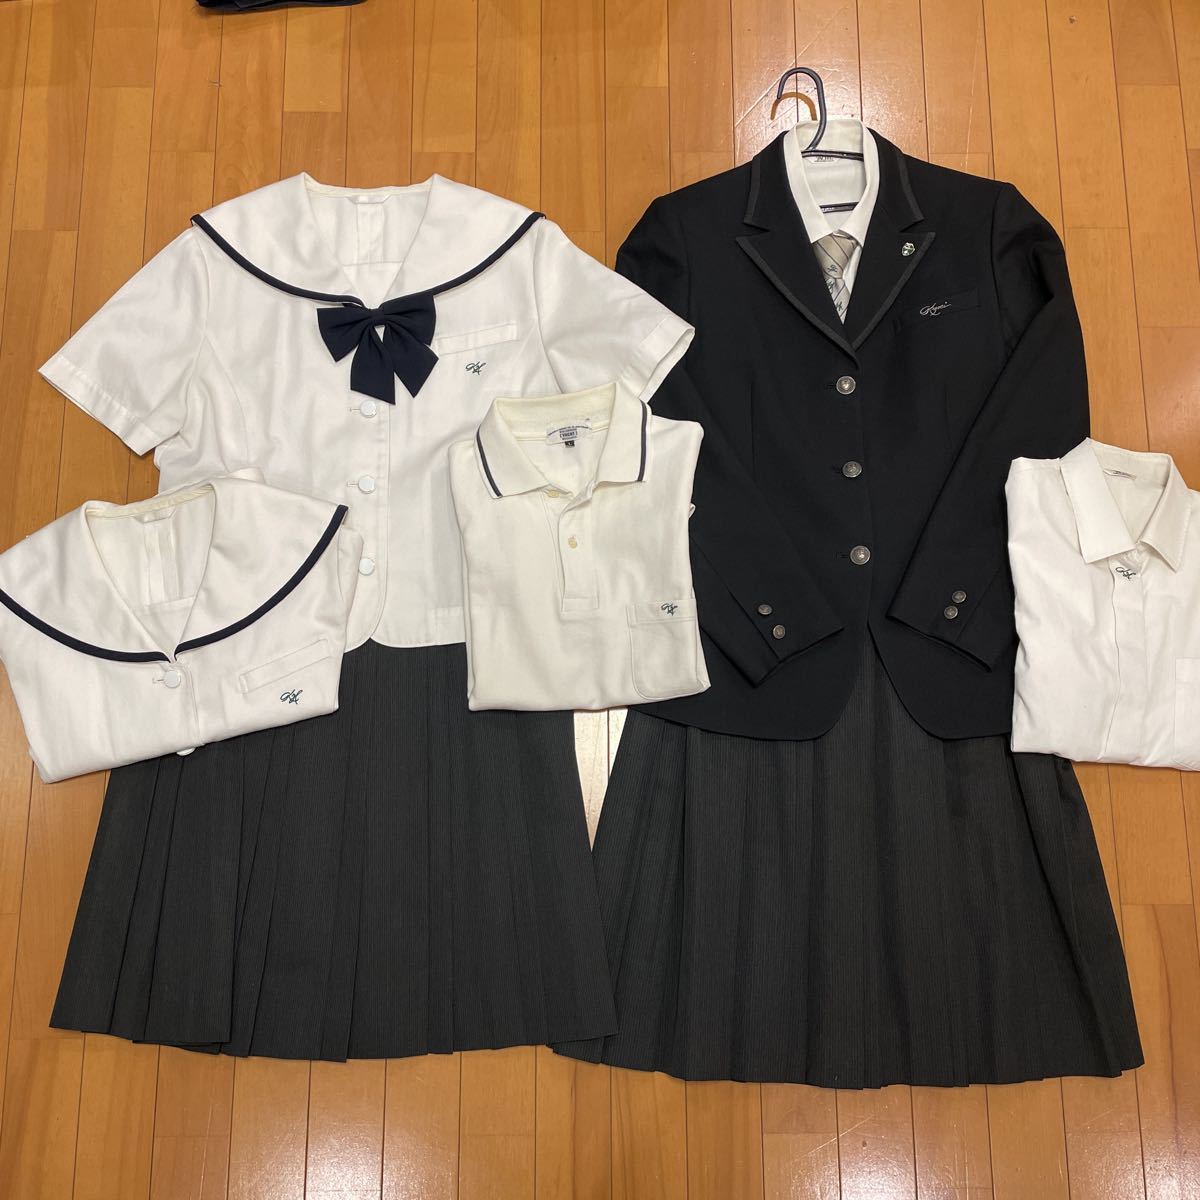 399 コスプレ衣装 愛知県私立享栄高校制服 校章付きブレザー ネクタイ